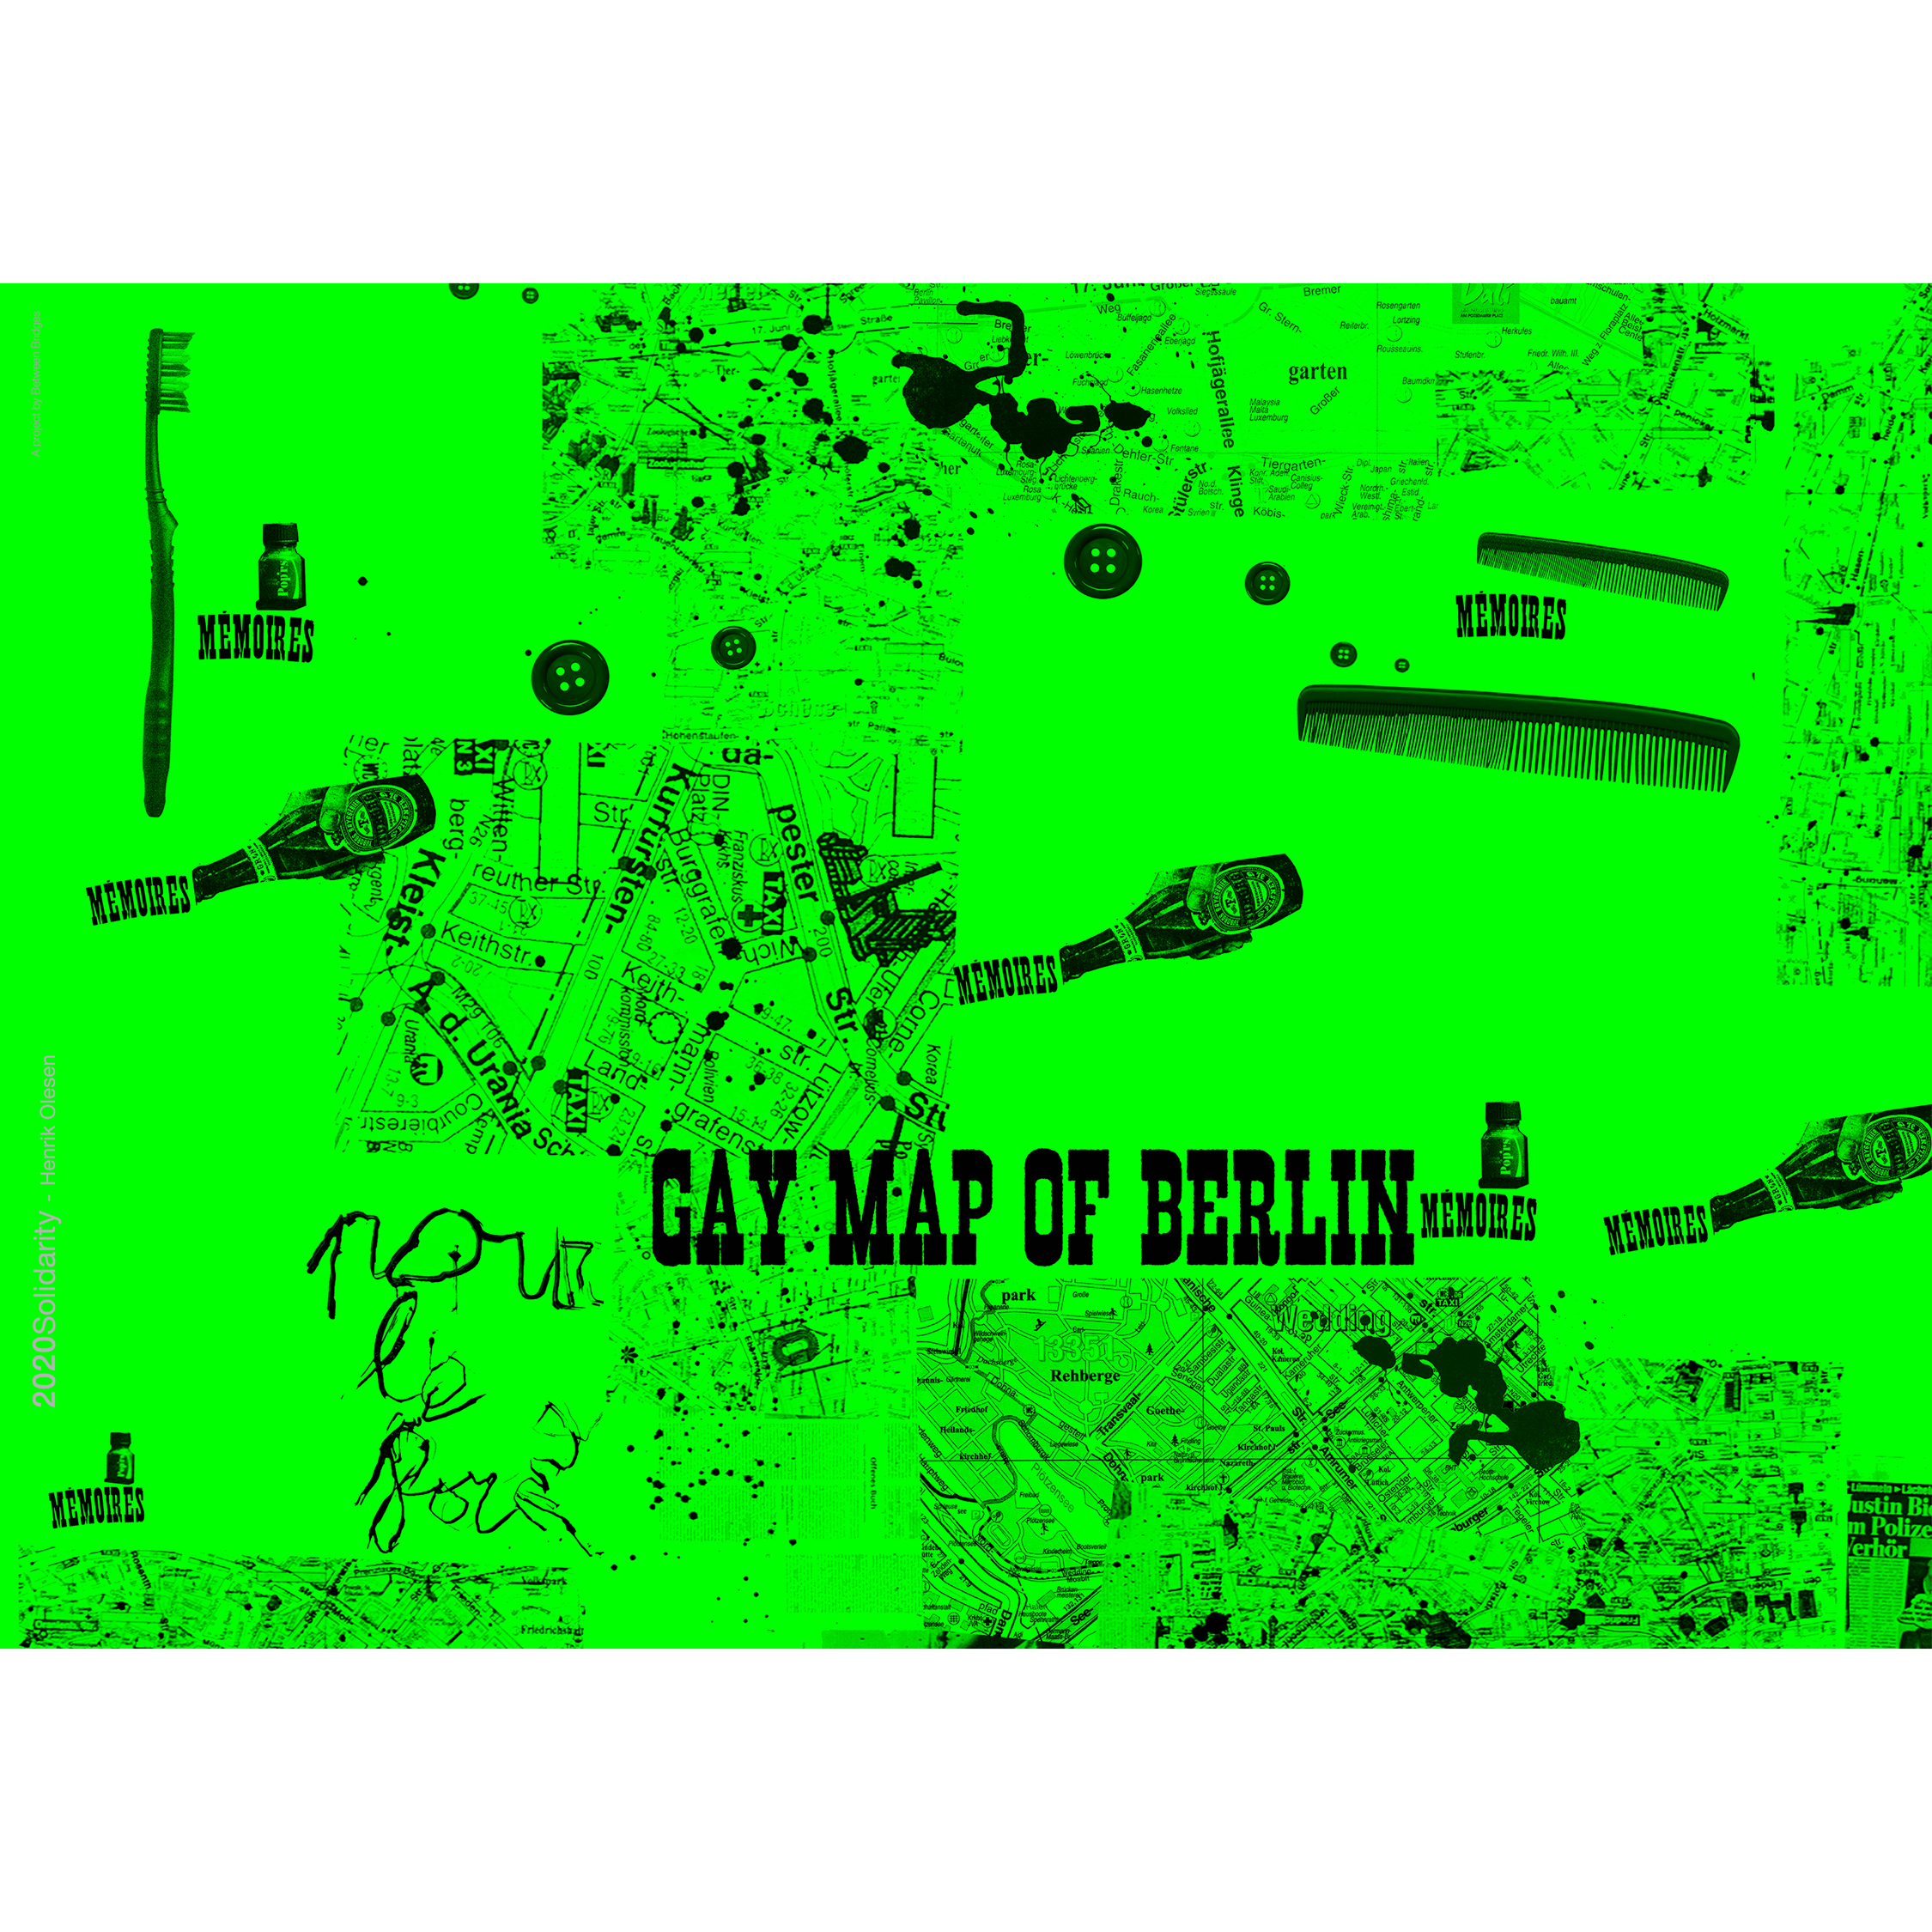 2020 SOLIDARITY / Between Bridges - Henrik Olesen - Gay Map of Berlin